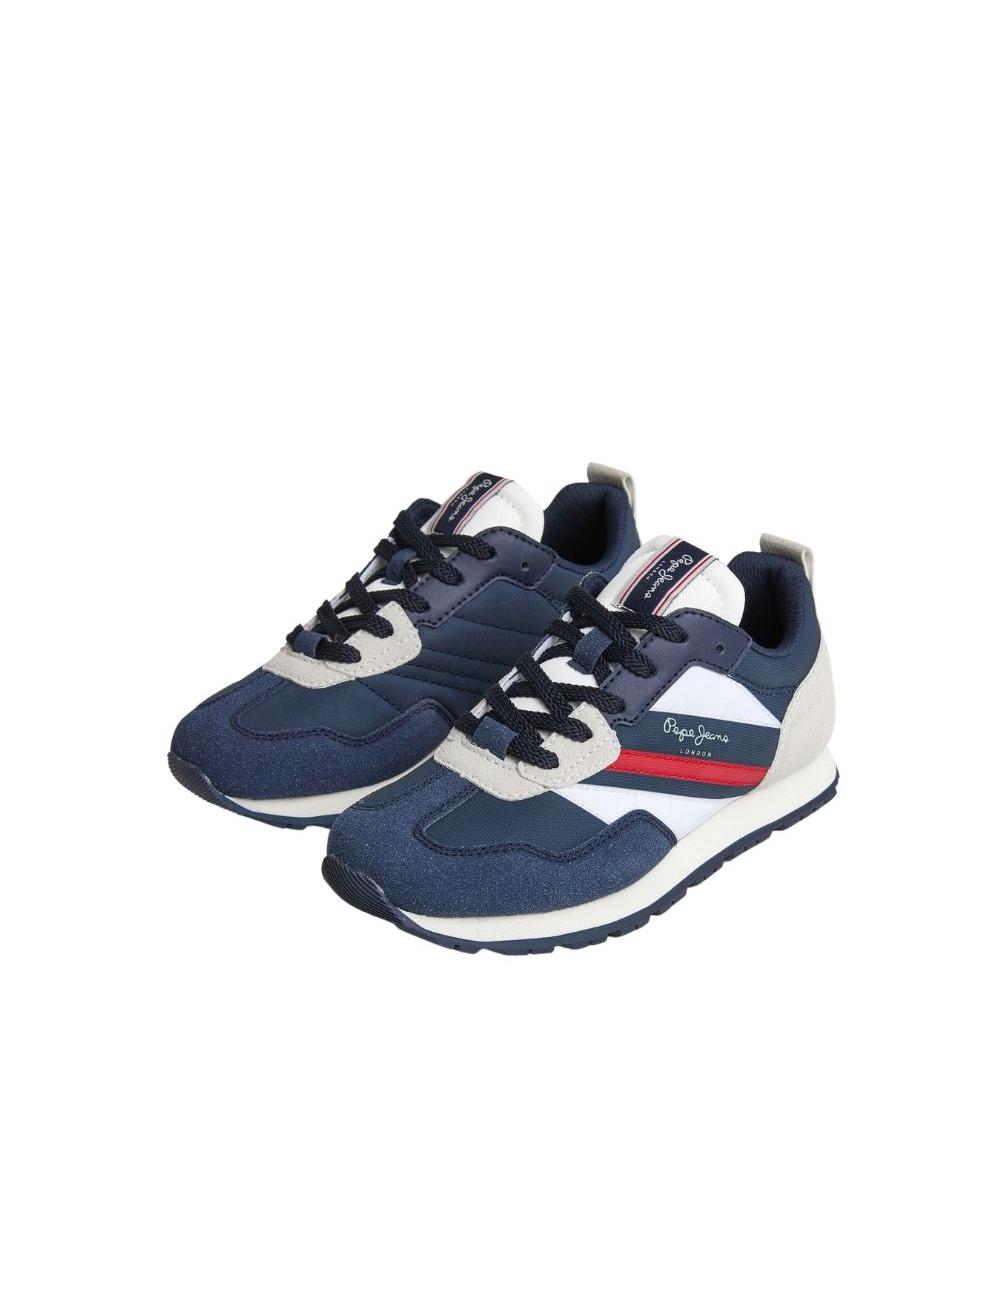 Pepe Jeans Zapatillas London Classic G azul - Tienda Esdemarca calzado,  moda y complementos - zapatos de marca y zapatillas de marca